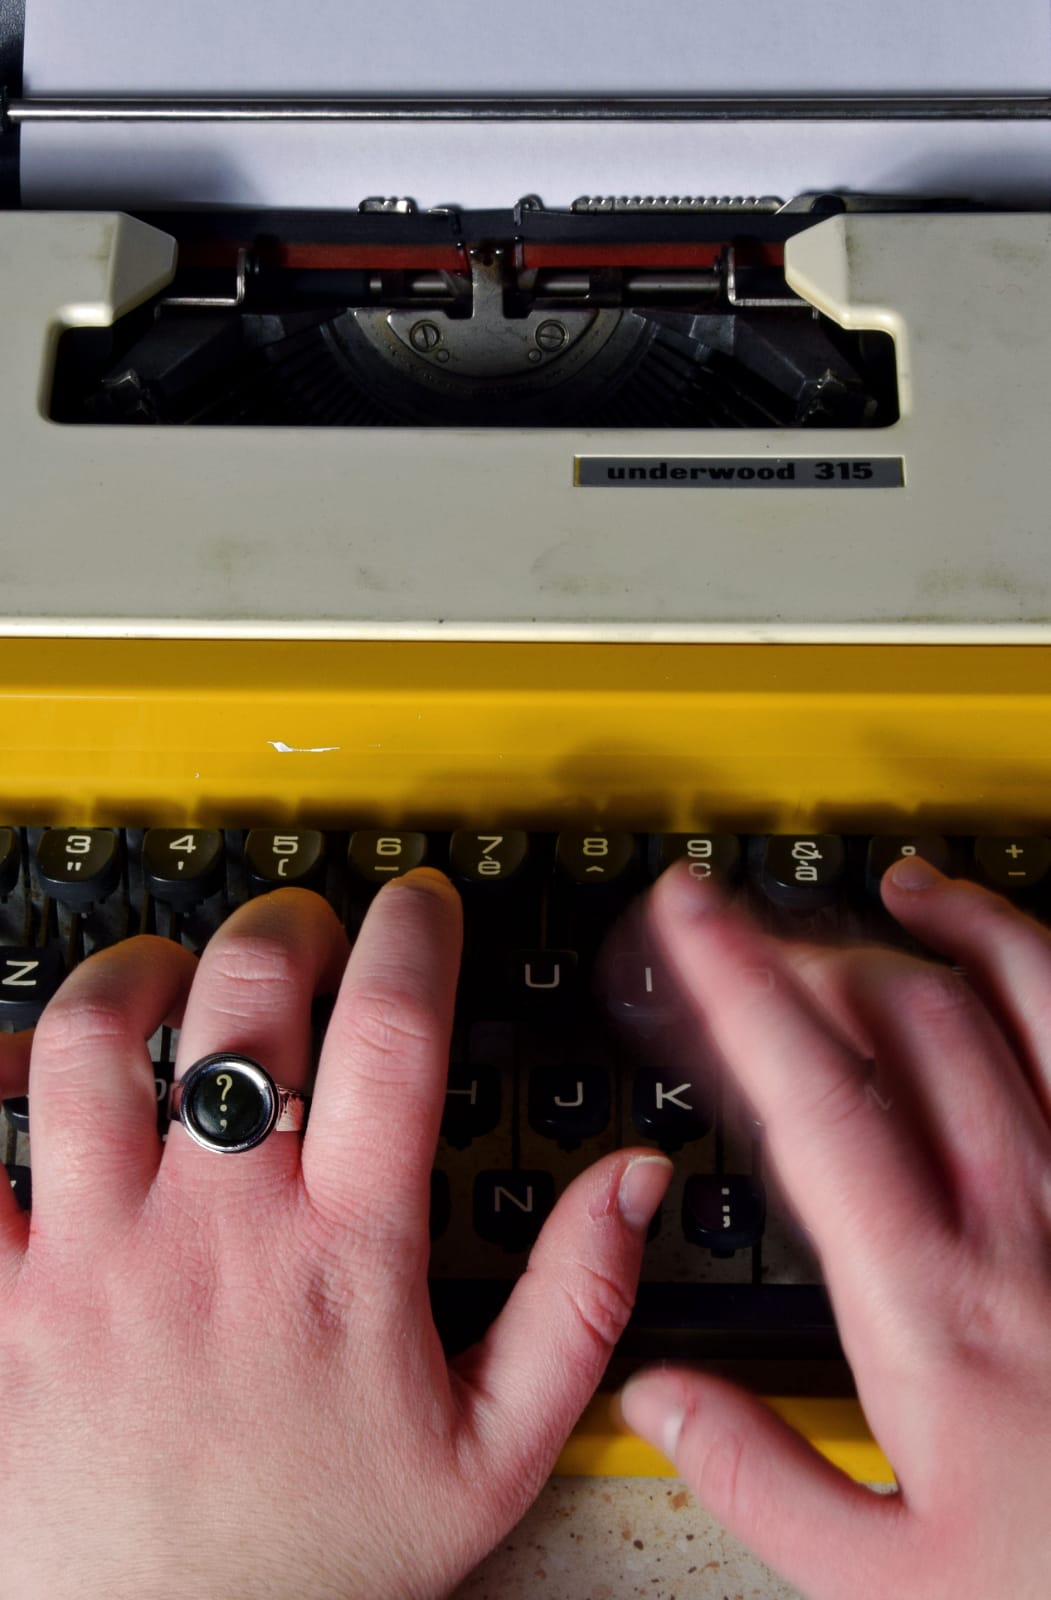 Anello con tasto di macchina da scrivere versione tonda - Tasto a richiesta